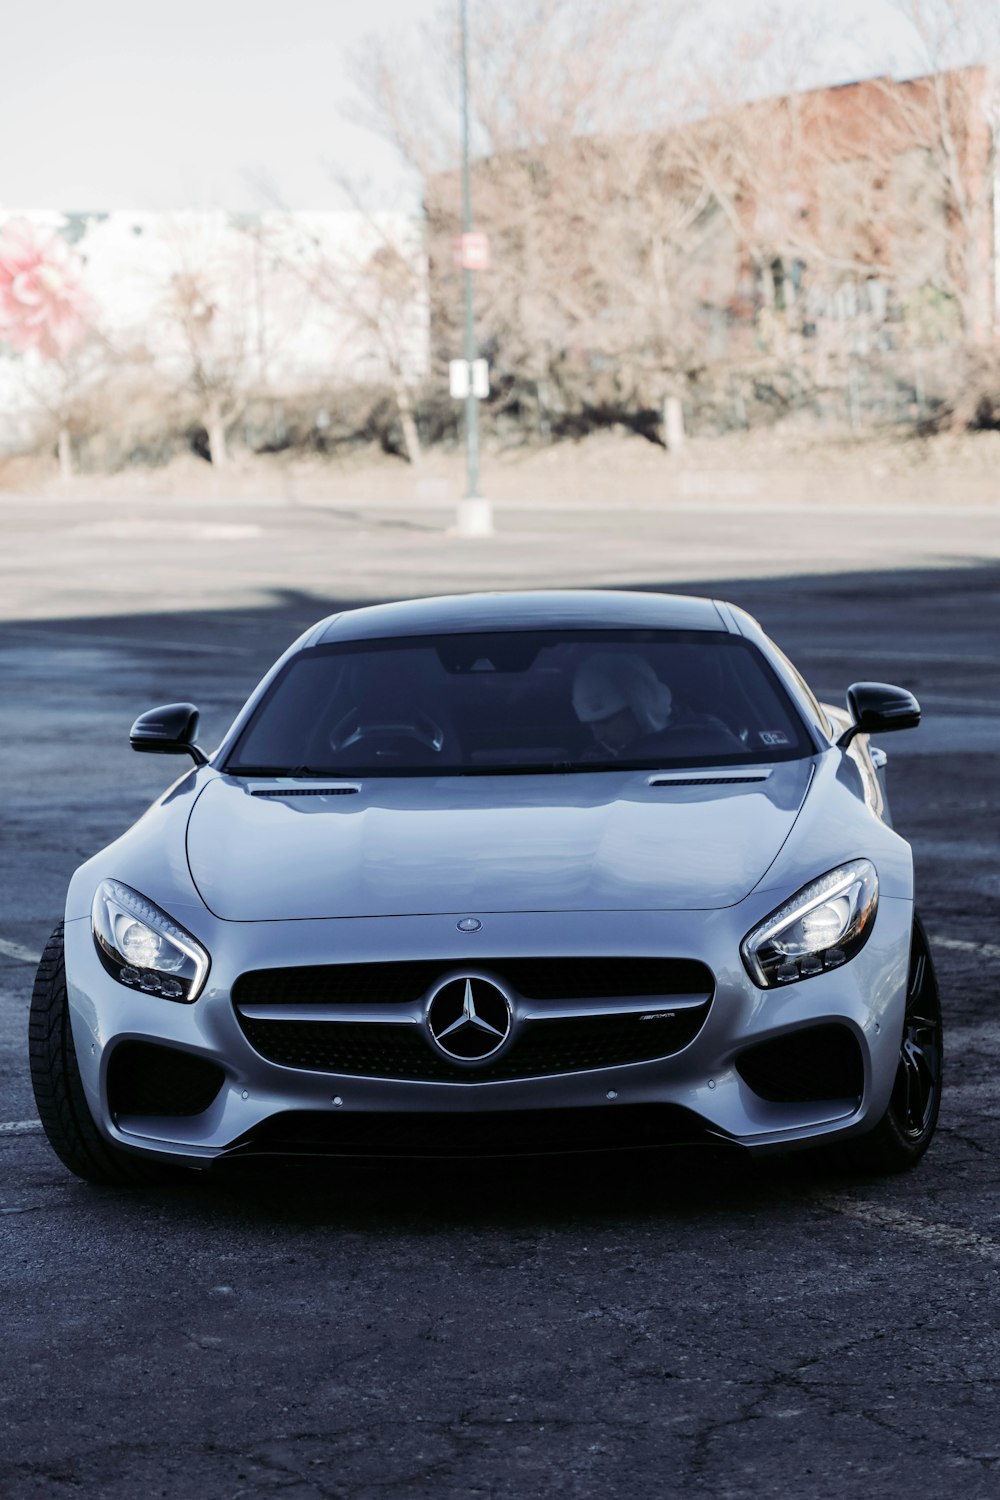 Une Mercedes sport argentée garée dans un parking